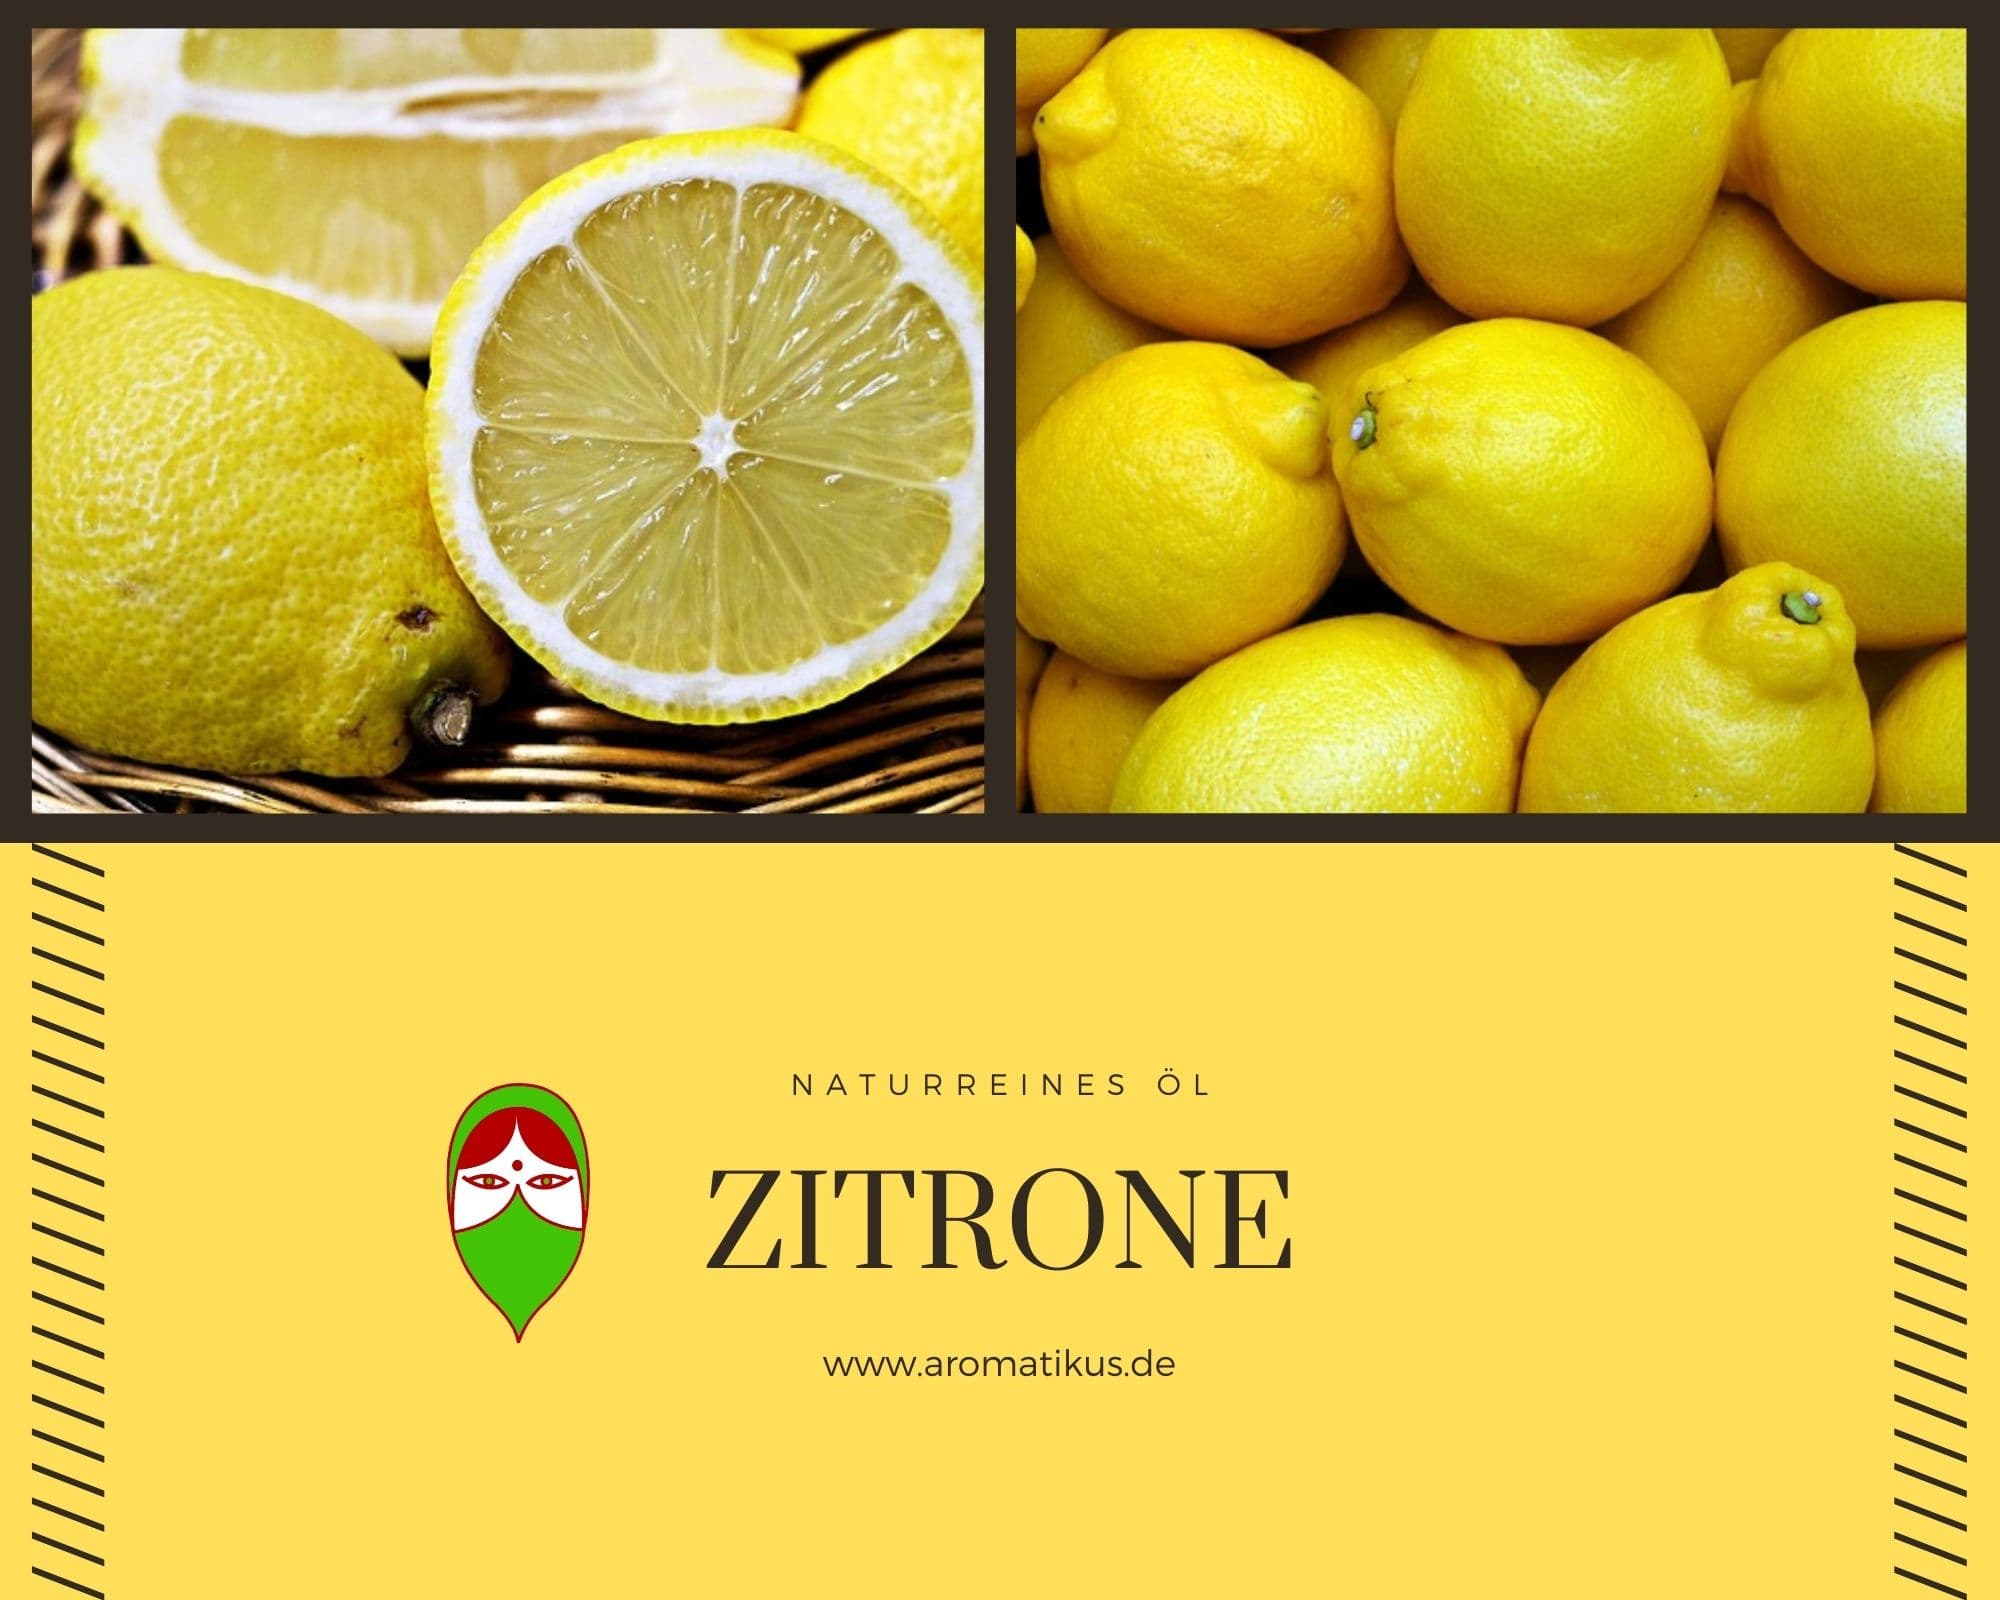 Ätherisches Duftöl Zitrone als naturreines Öl von Aromatikus